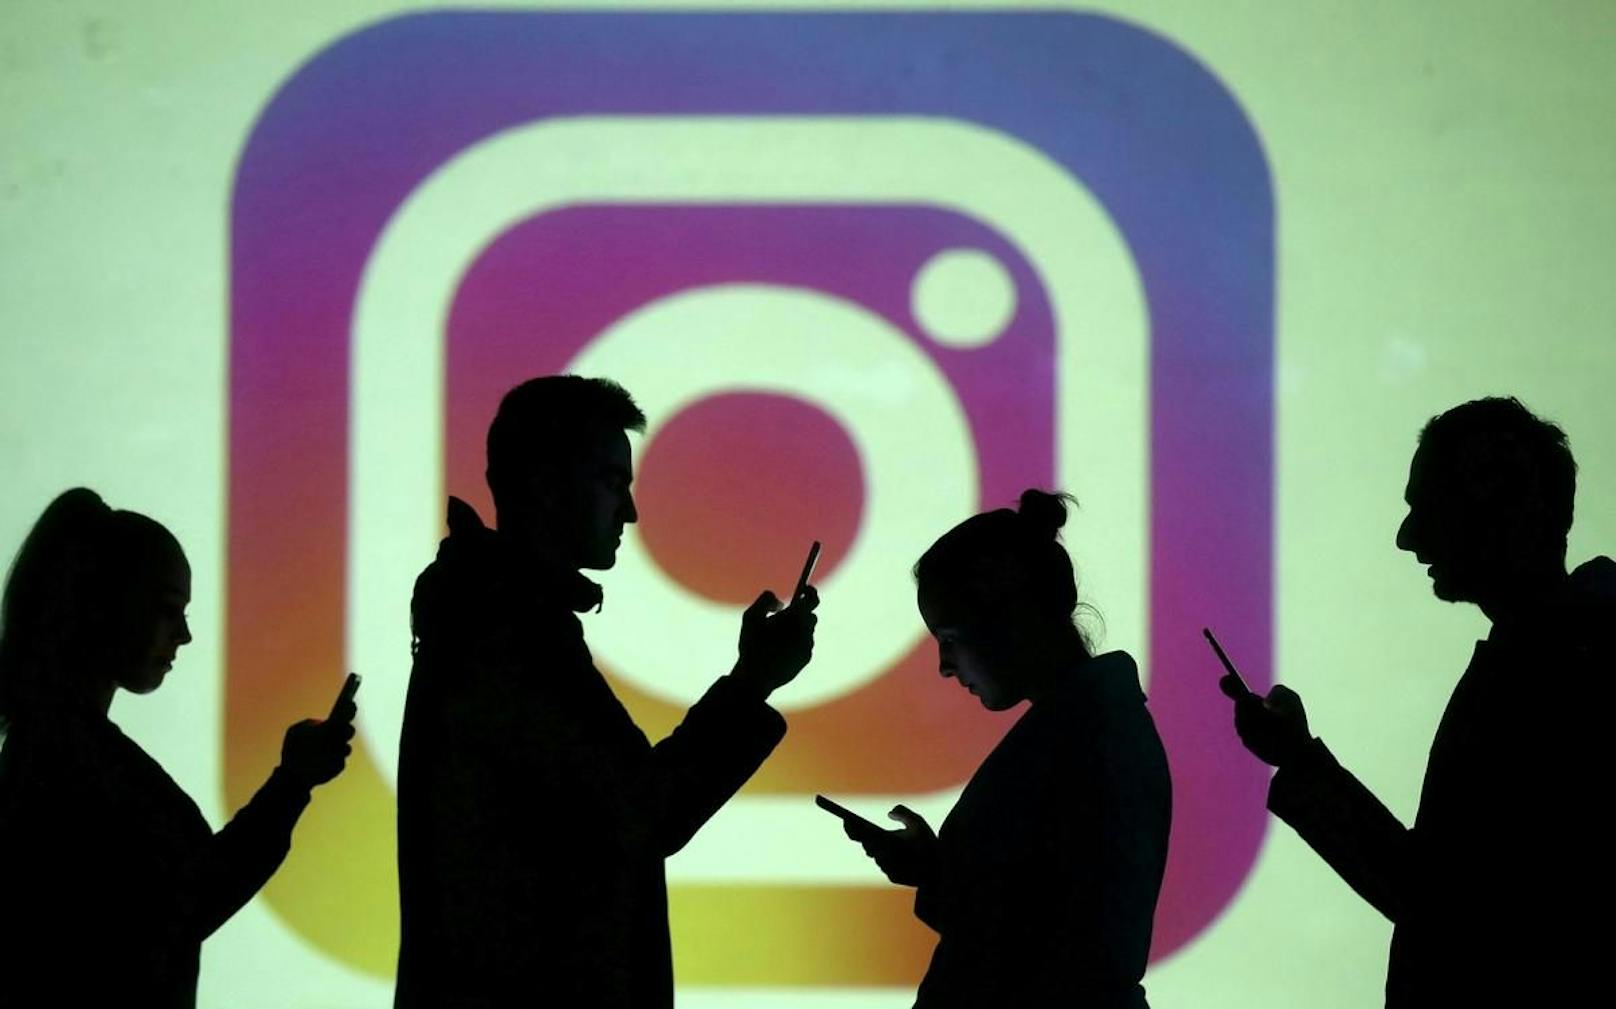 Die zu Facebook gehörende Plattform Instagram wird ebenfalls mit seinen Video-Features experimentieren, erklärte Unternehmenschef Adam Mosseri auf Twitter.